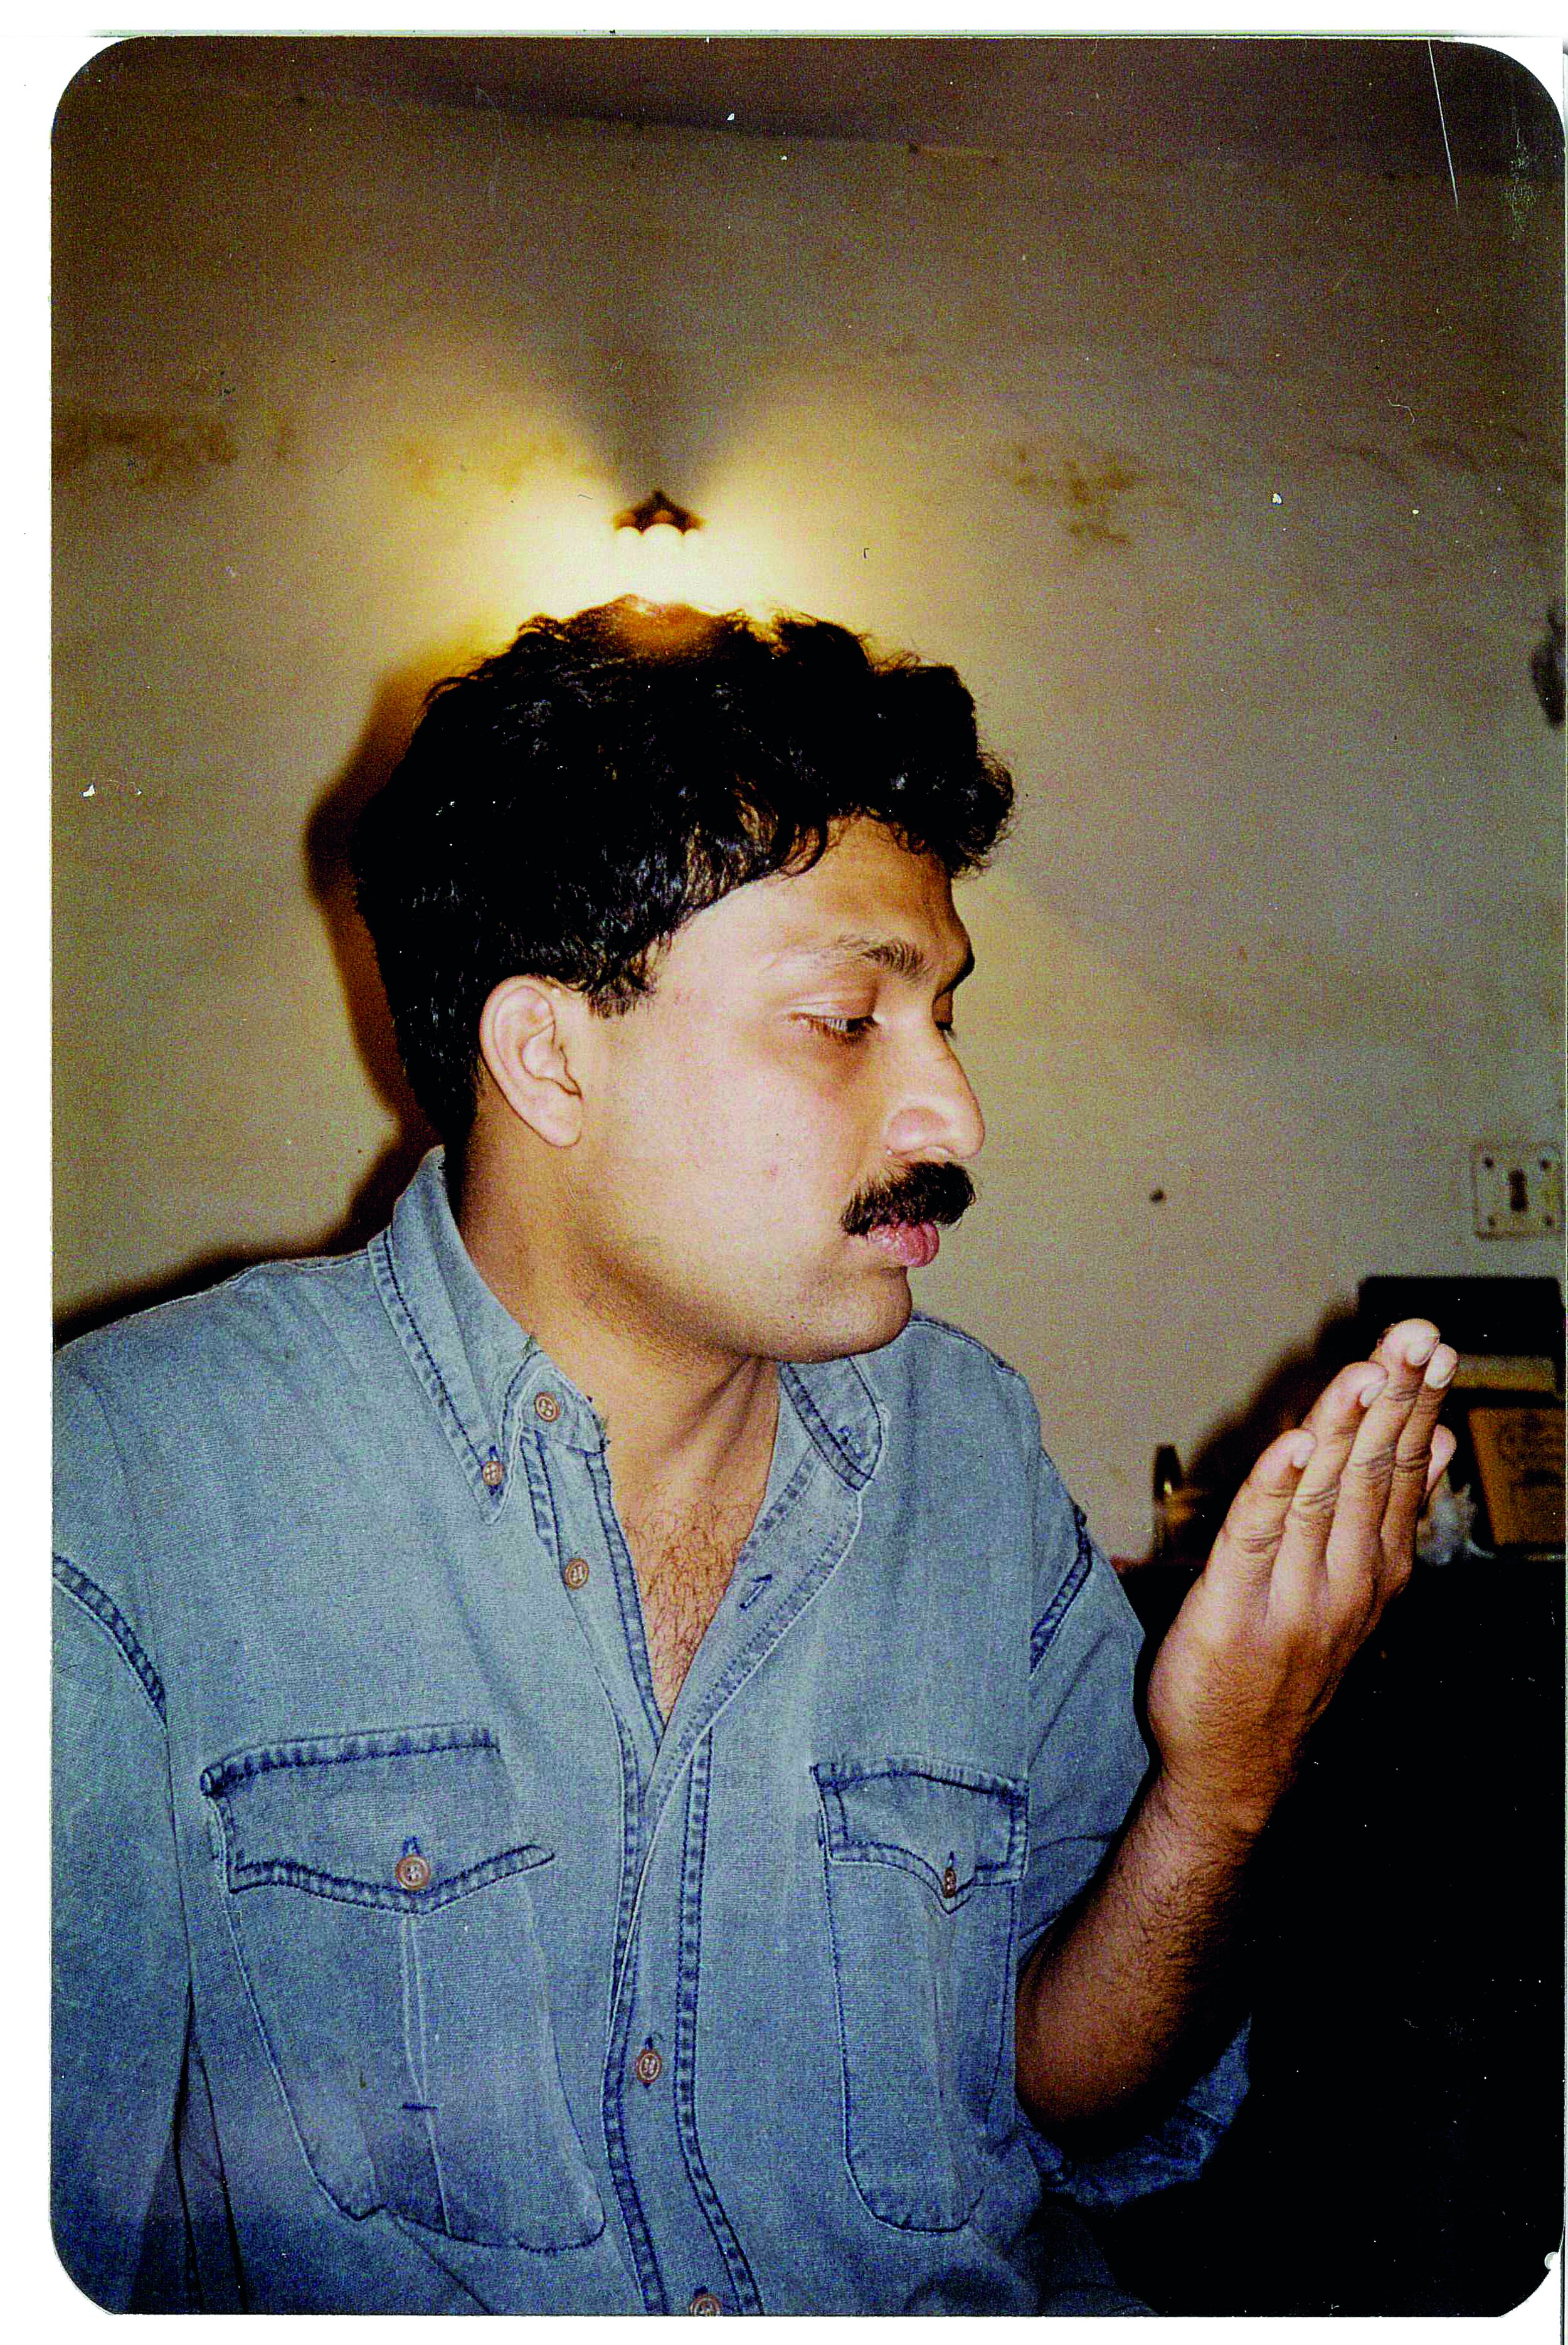  Garg in 2001 (courtesy of Vikram Garg) 